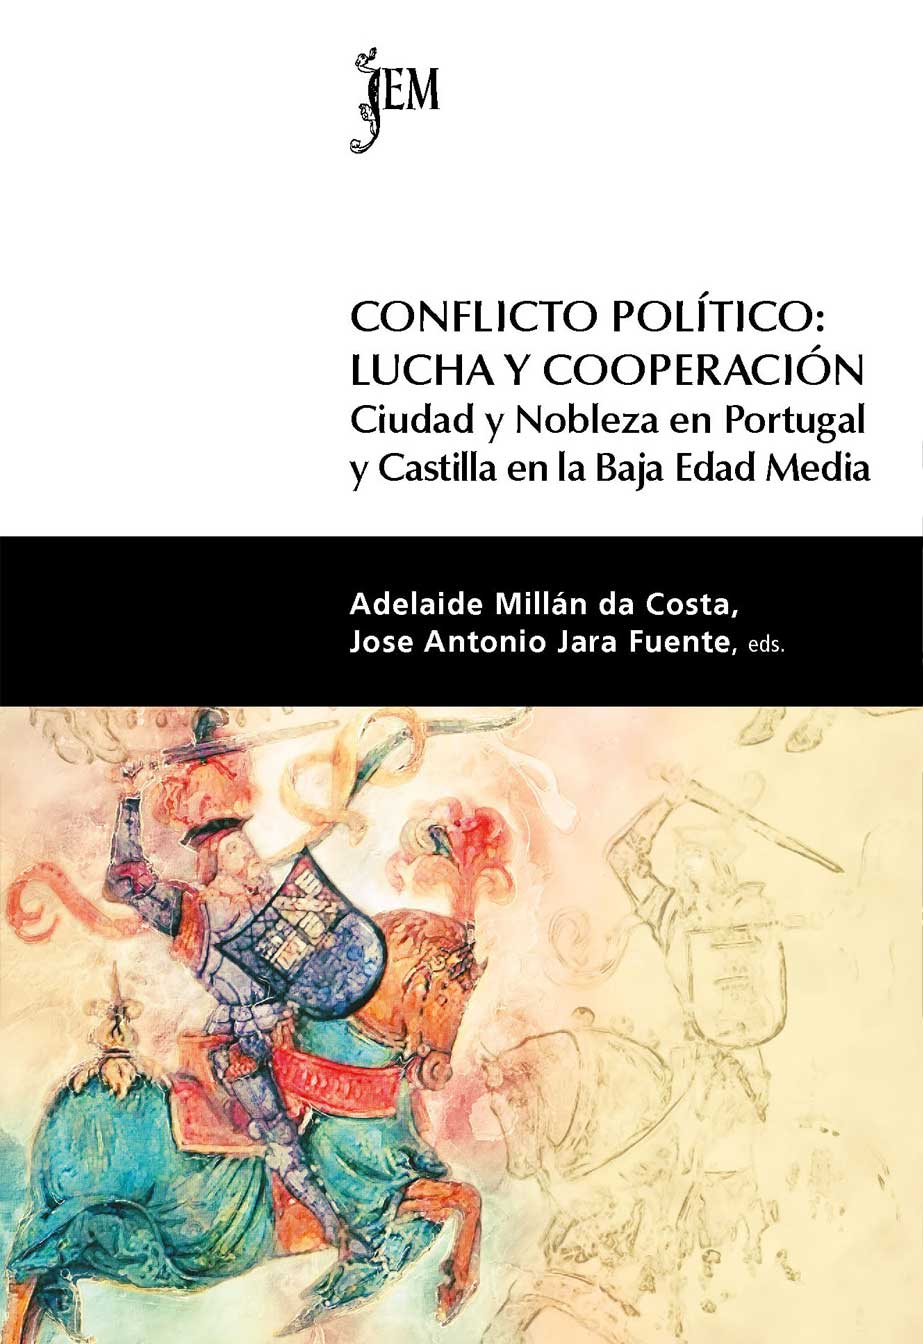 Capa da publicação Conflicto politico: lucha y cooperación. Ciudad y nobleza en Portugal y Castilla en la Baja Edad Media